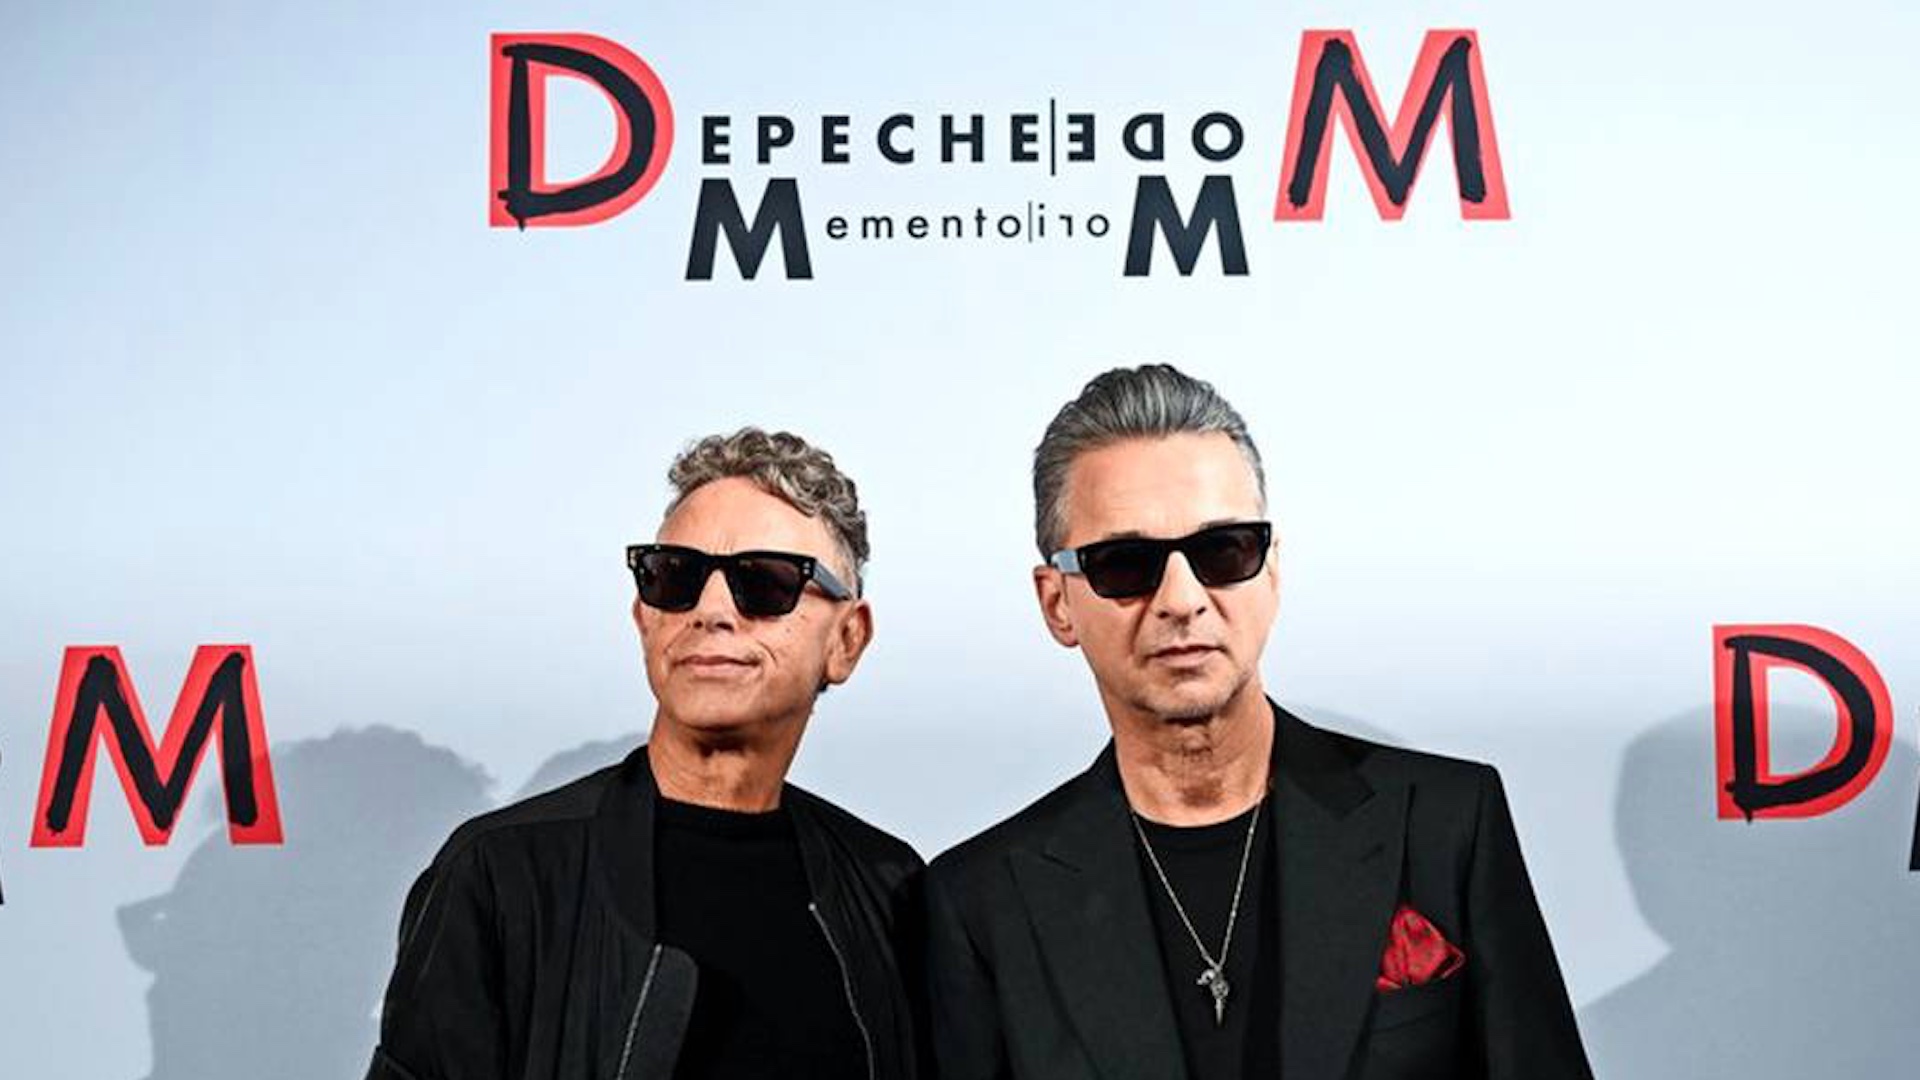 ¿Qué tanto sabe de Depeche Mode?